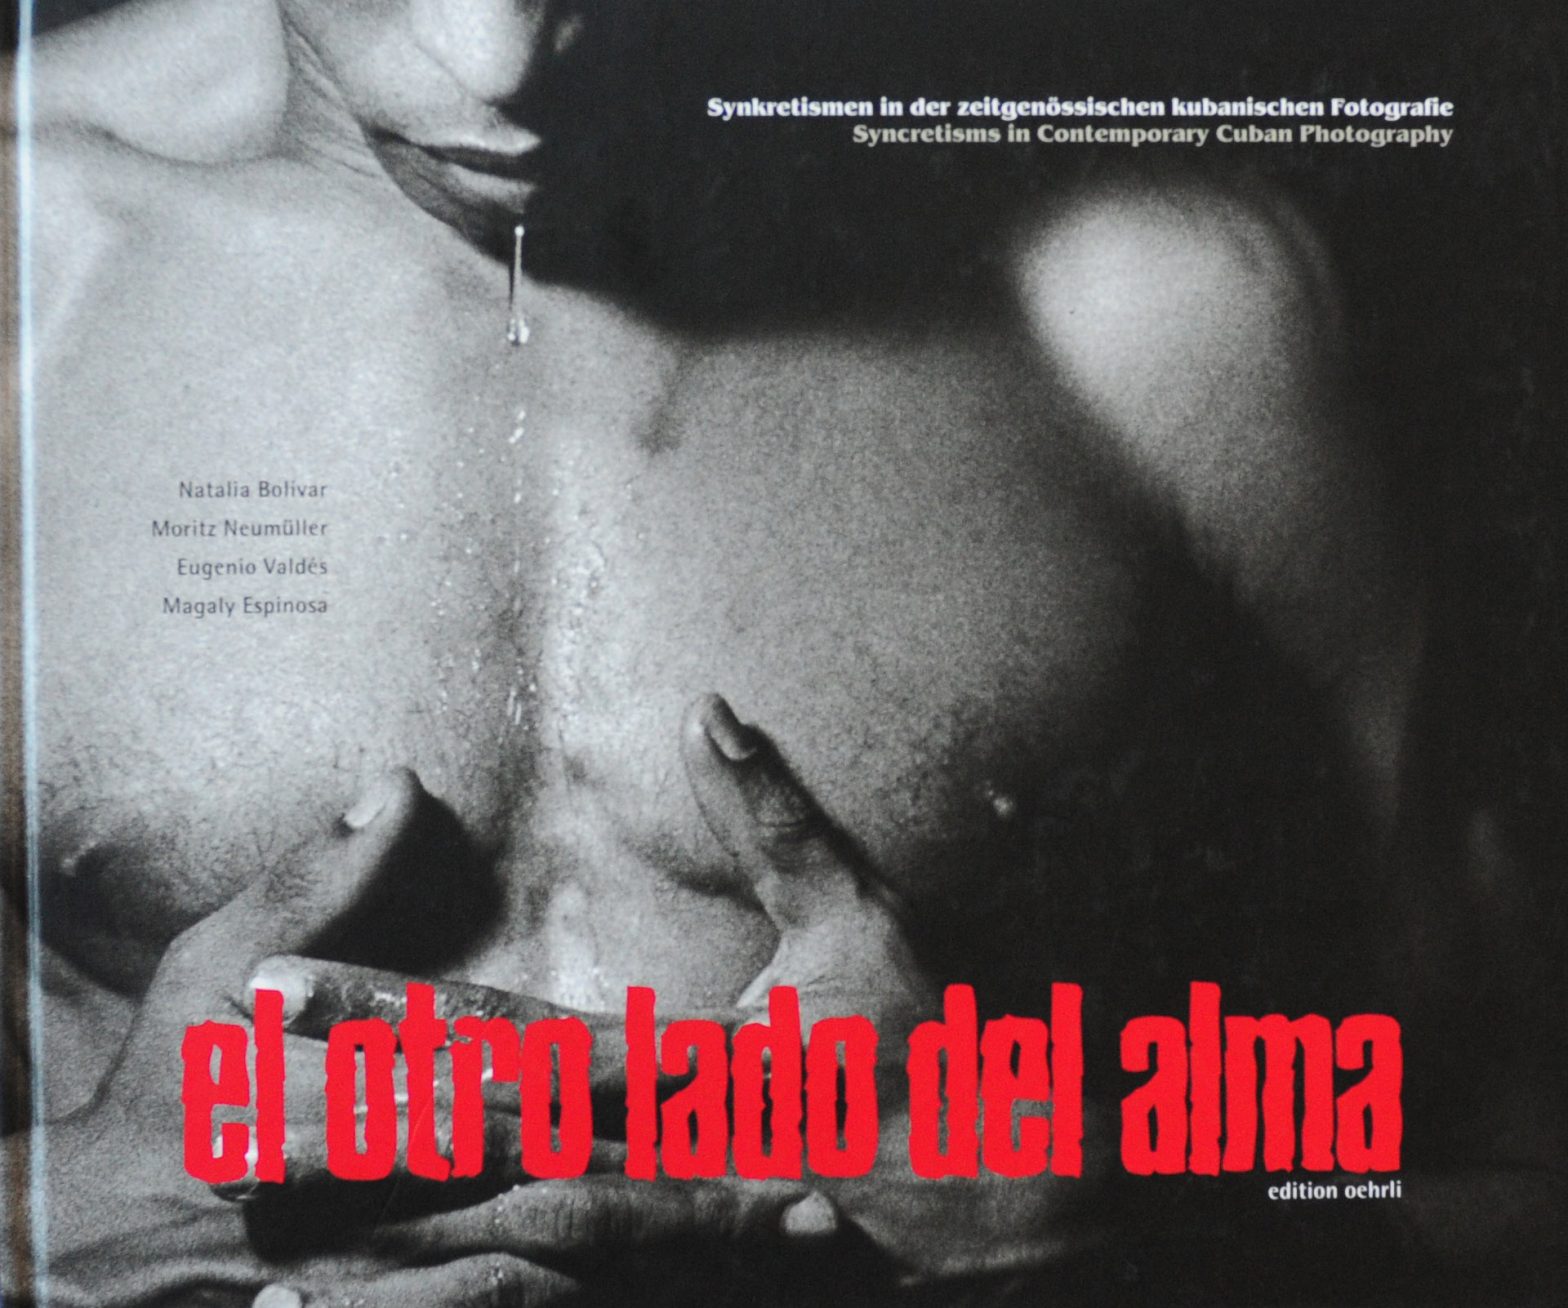 El Otro Lado Del Alma: Syncretisms in Contemporary Cuban Photography Various Artists